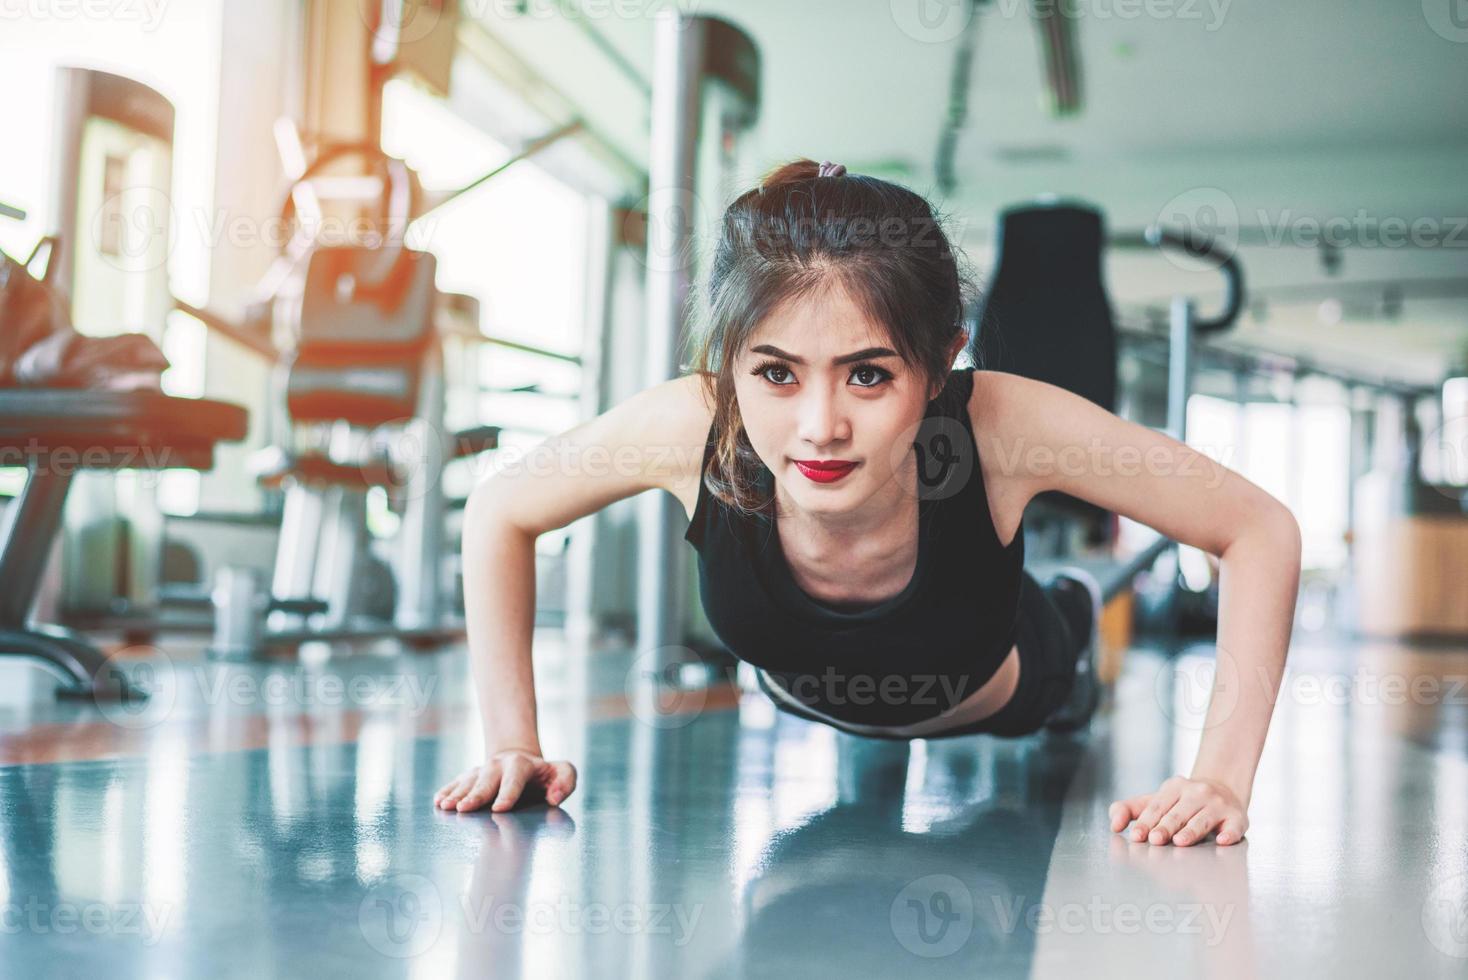 chica de fitness mujer asiática hacer empujones en el gimnasio. concepto de salud y salud. tema de entrenamiento y desarrollo corporal. concepto de fuerza y belleza foto